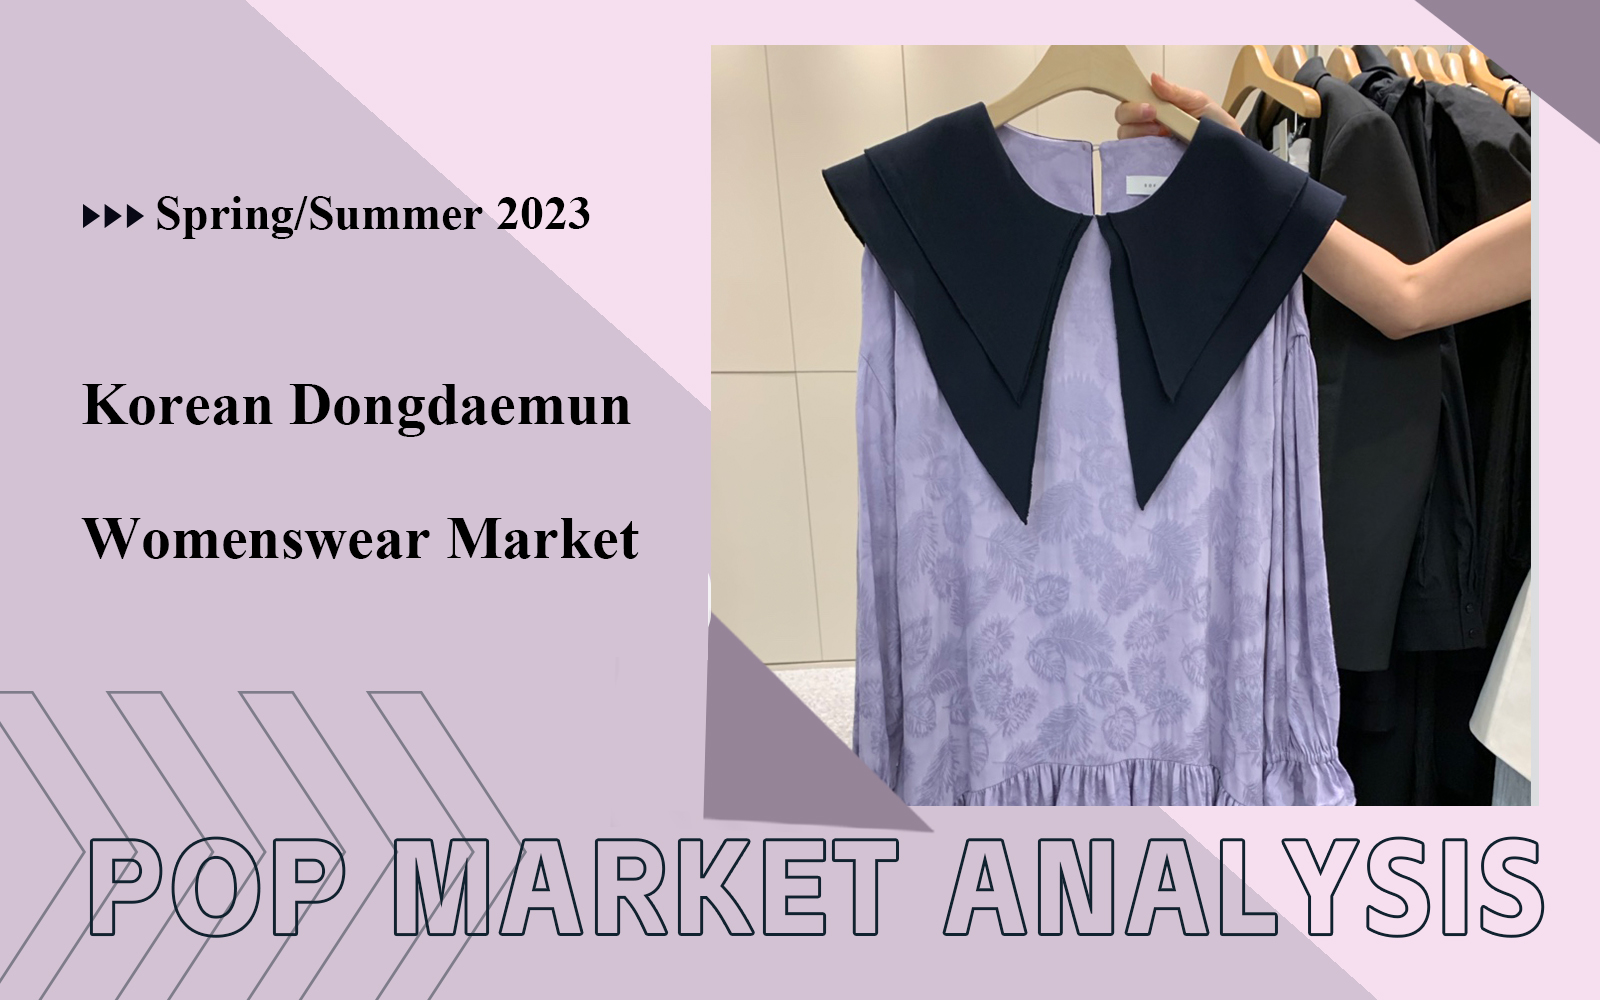 Womenswear Market Analysis of Korean Dongdaemun in April